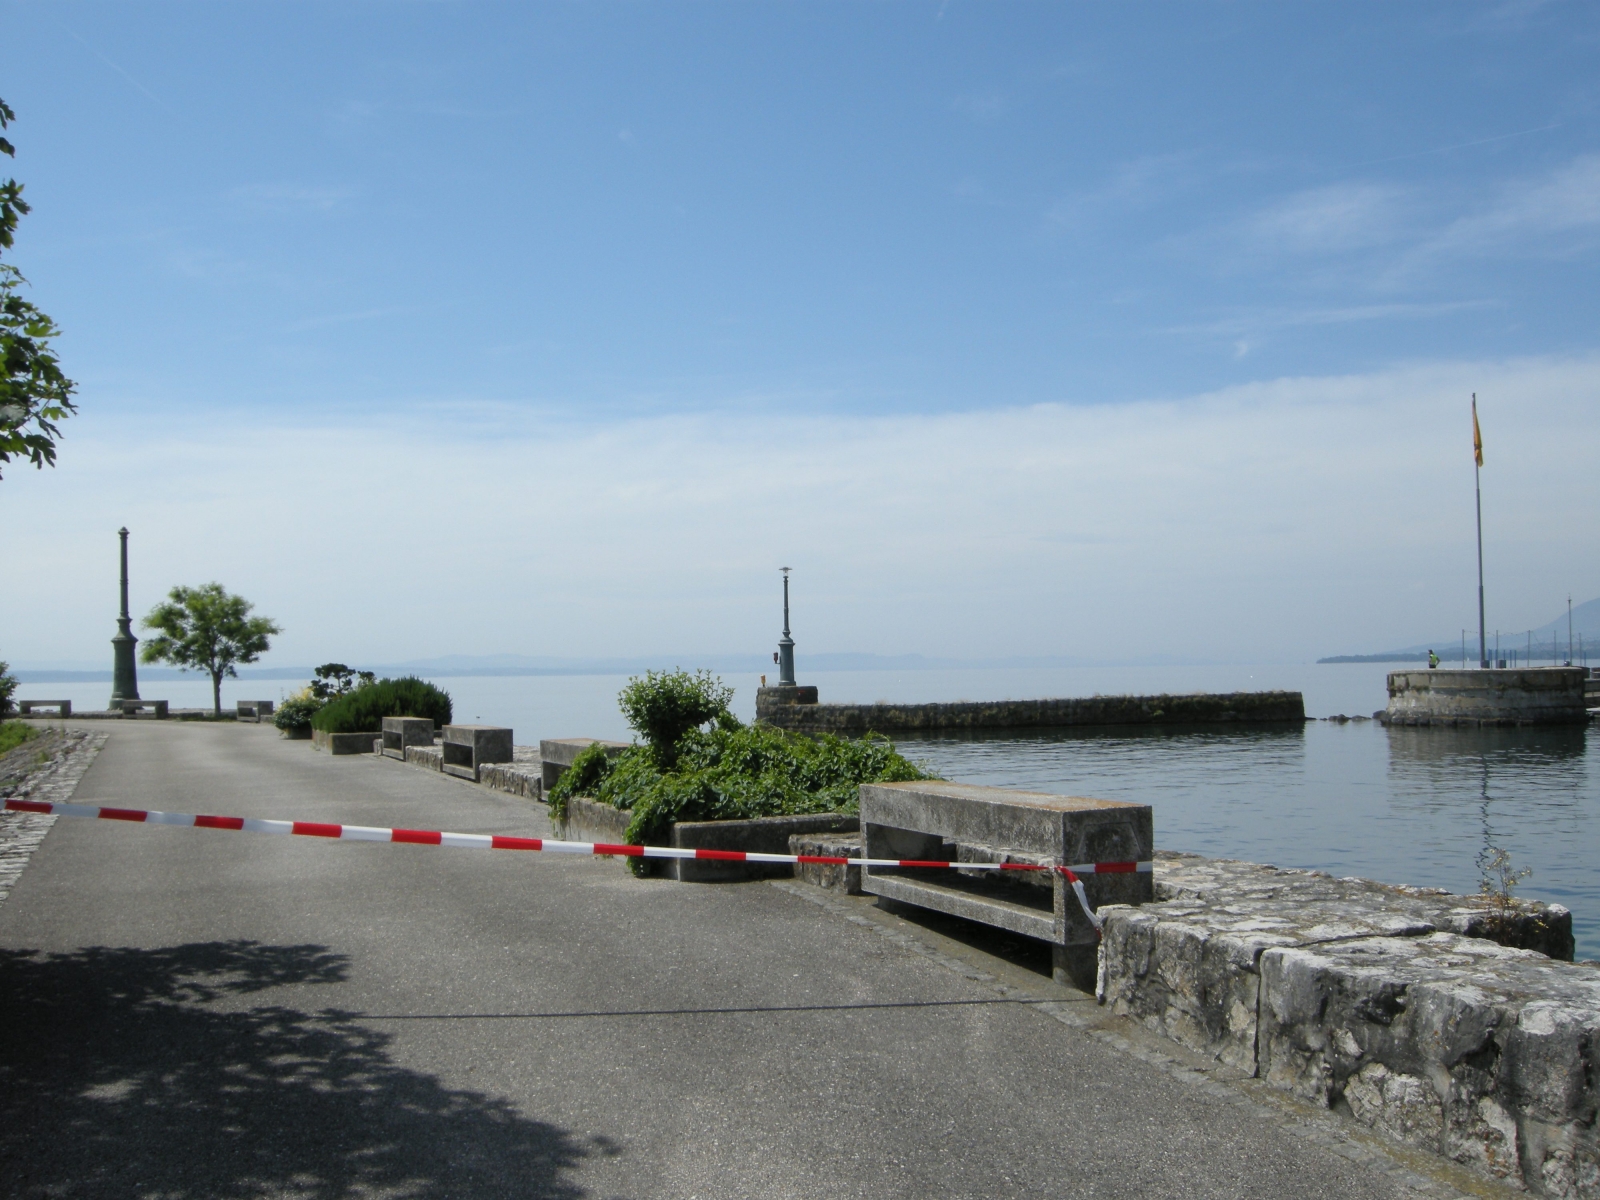 La police a fermé l'accès aux deux jetées du port de Neuchâtel suite au drame.                             